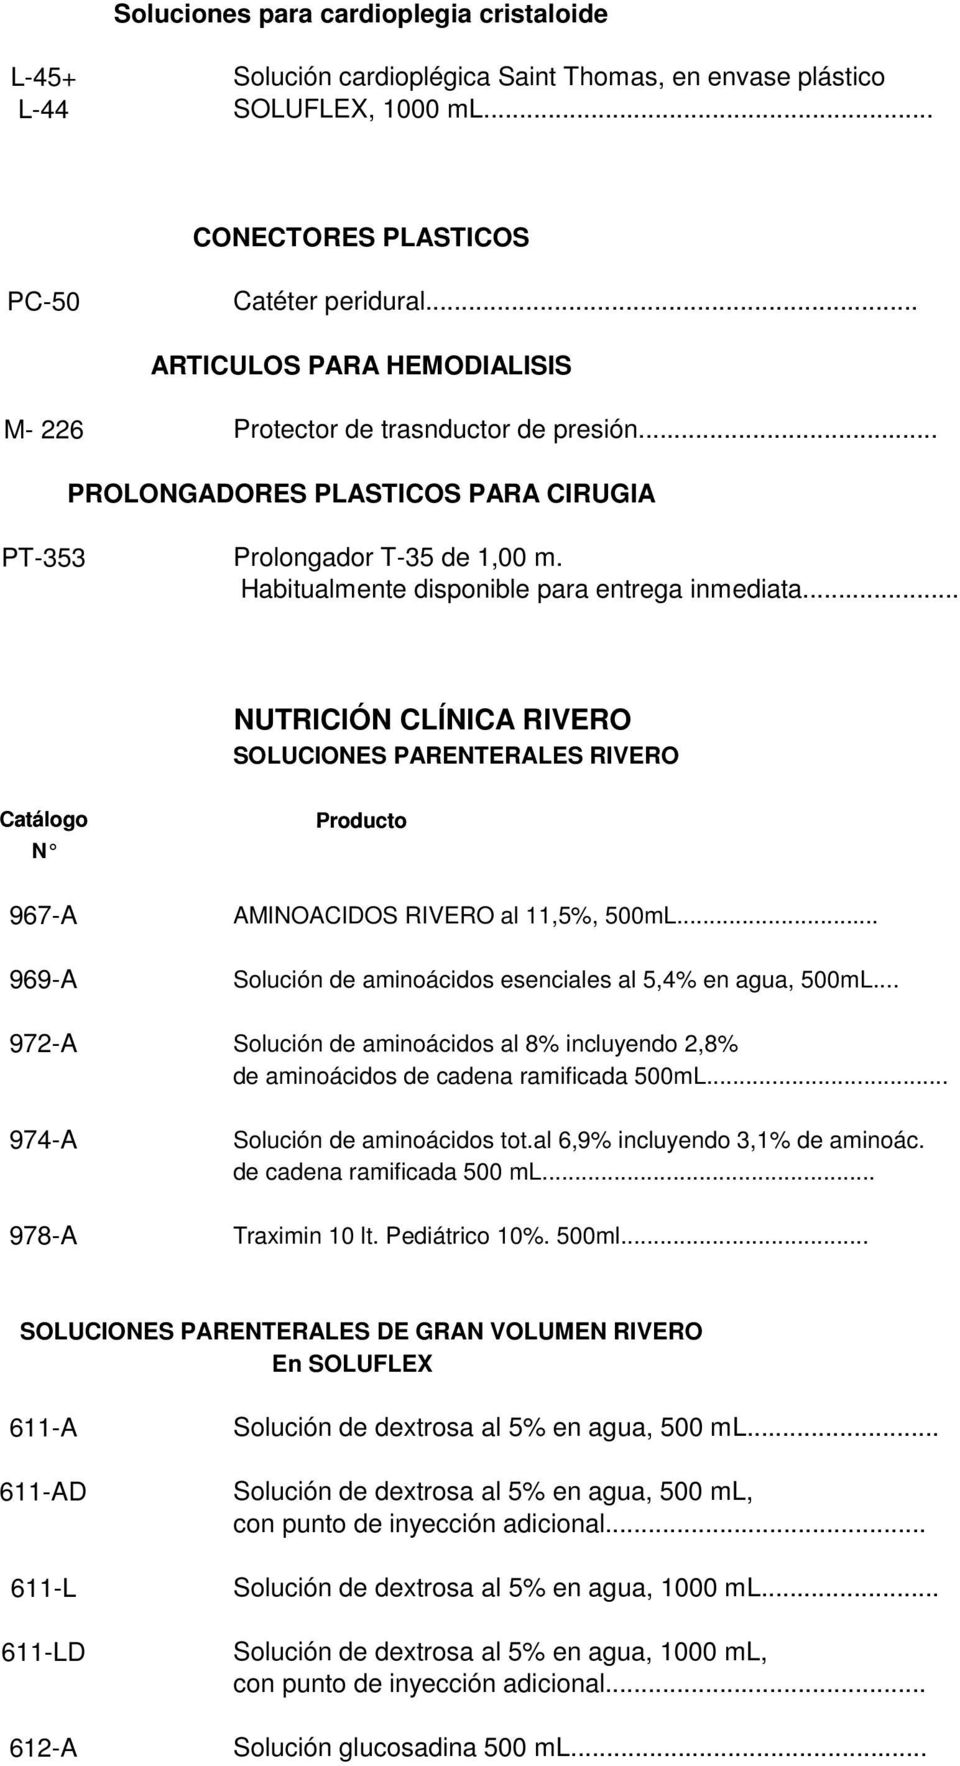 .. NUTRICIÓN CLÍNICA RIVERO SOLUCIONES PARENTERALES RIVERO Catálogo N Producto 967-A AMINOACIDOS RIVERO al 11,5%, 500mL... 969-A Solución de aminoácidos esenciales al 5,4% en agua, 500mL.